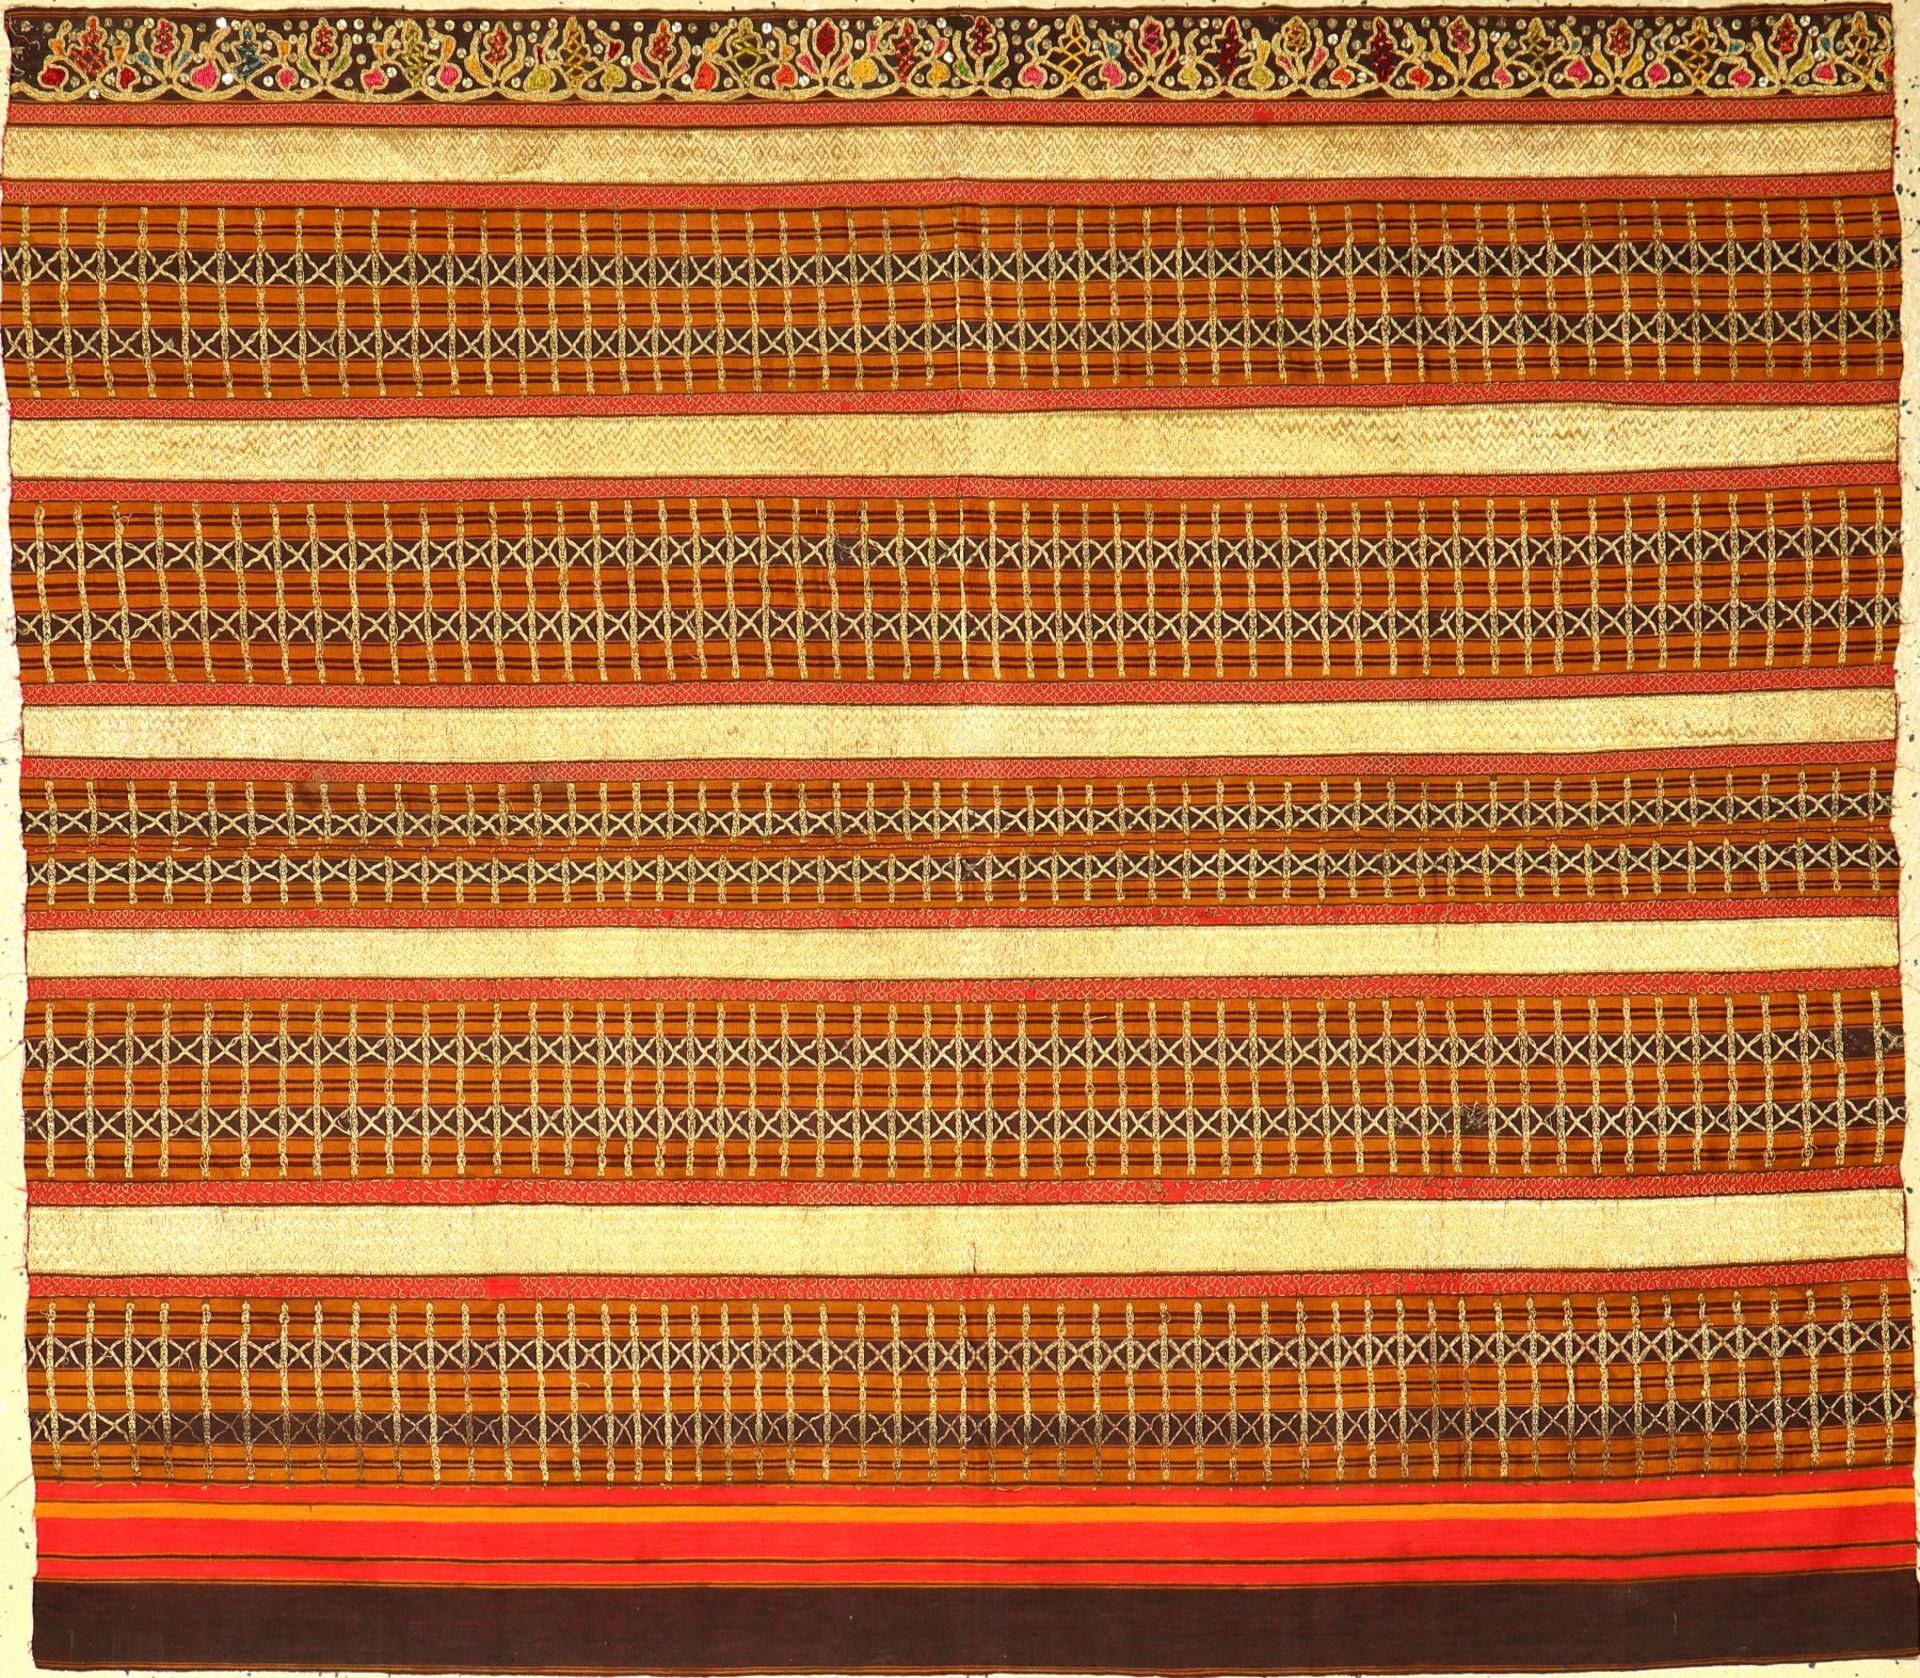 Feines indonesisches "Zeremonial-Textil" (Metallbroschiert) alt, Indonesien, um 1910/1920, Seiden-